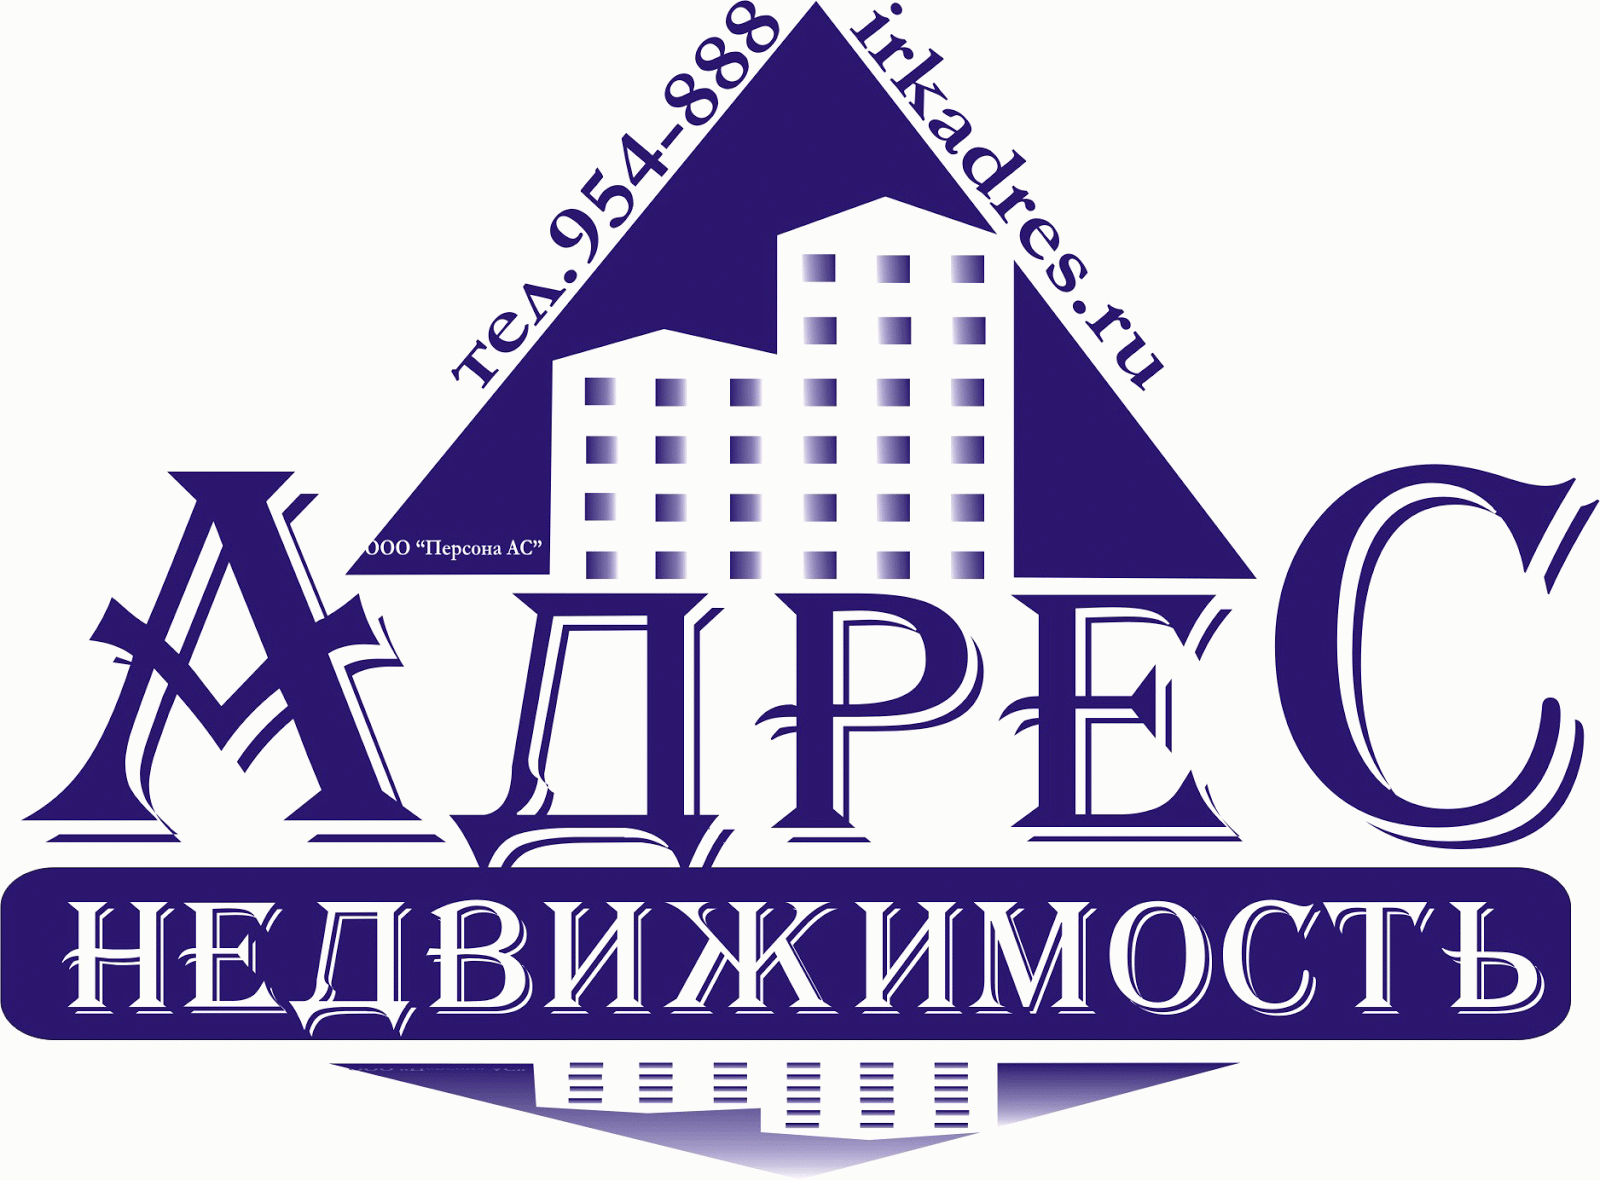 Сайт адрес недвижимость. Логотип агентства недвижимости. Название агентства недвижимости. Агентство недвижимости в Москве логотип. Красивые названия агентств недвижимости.